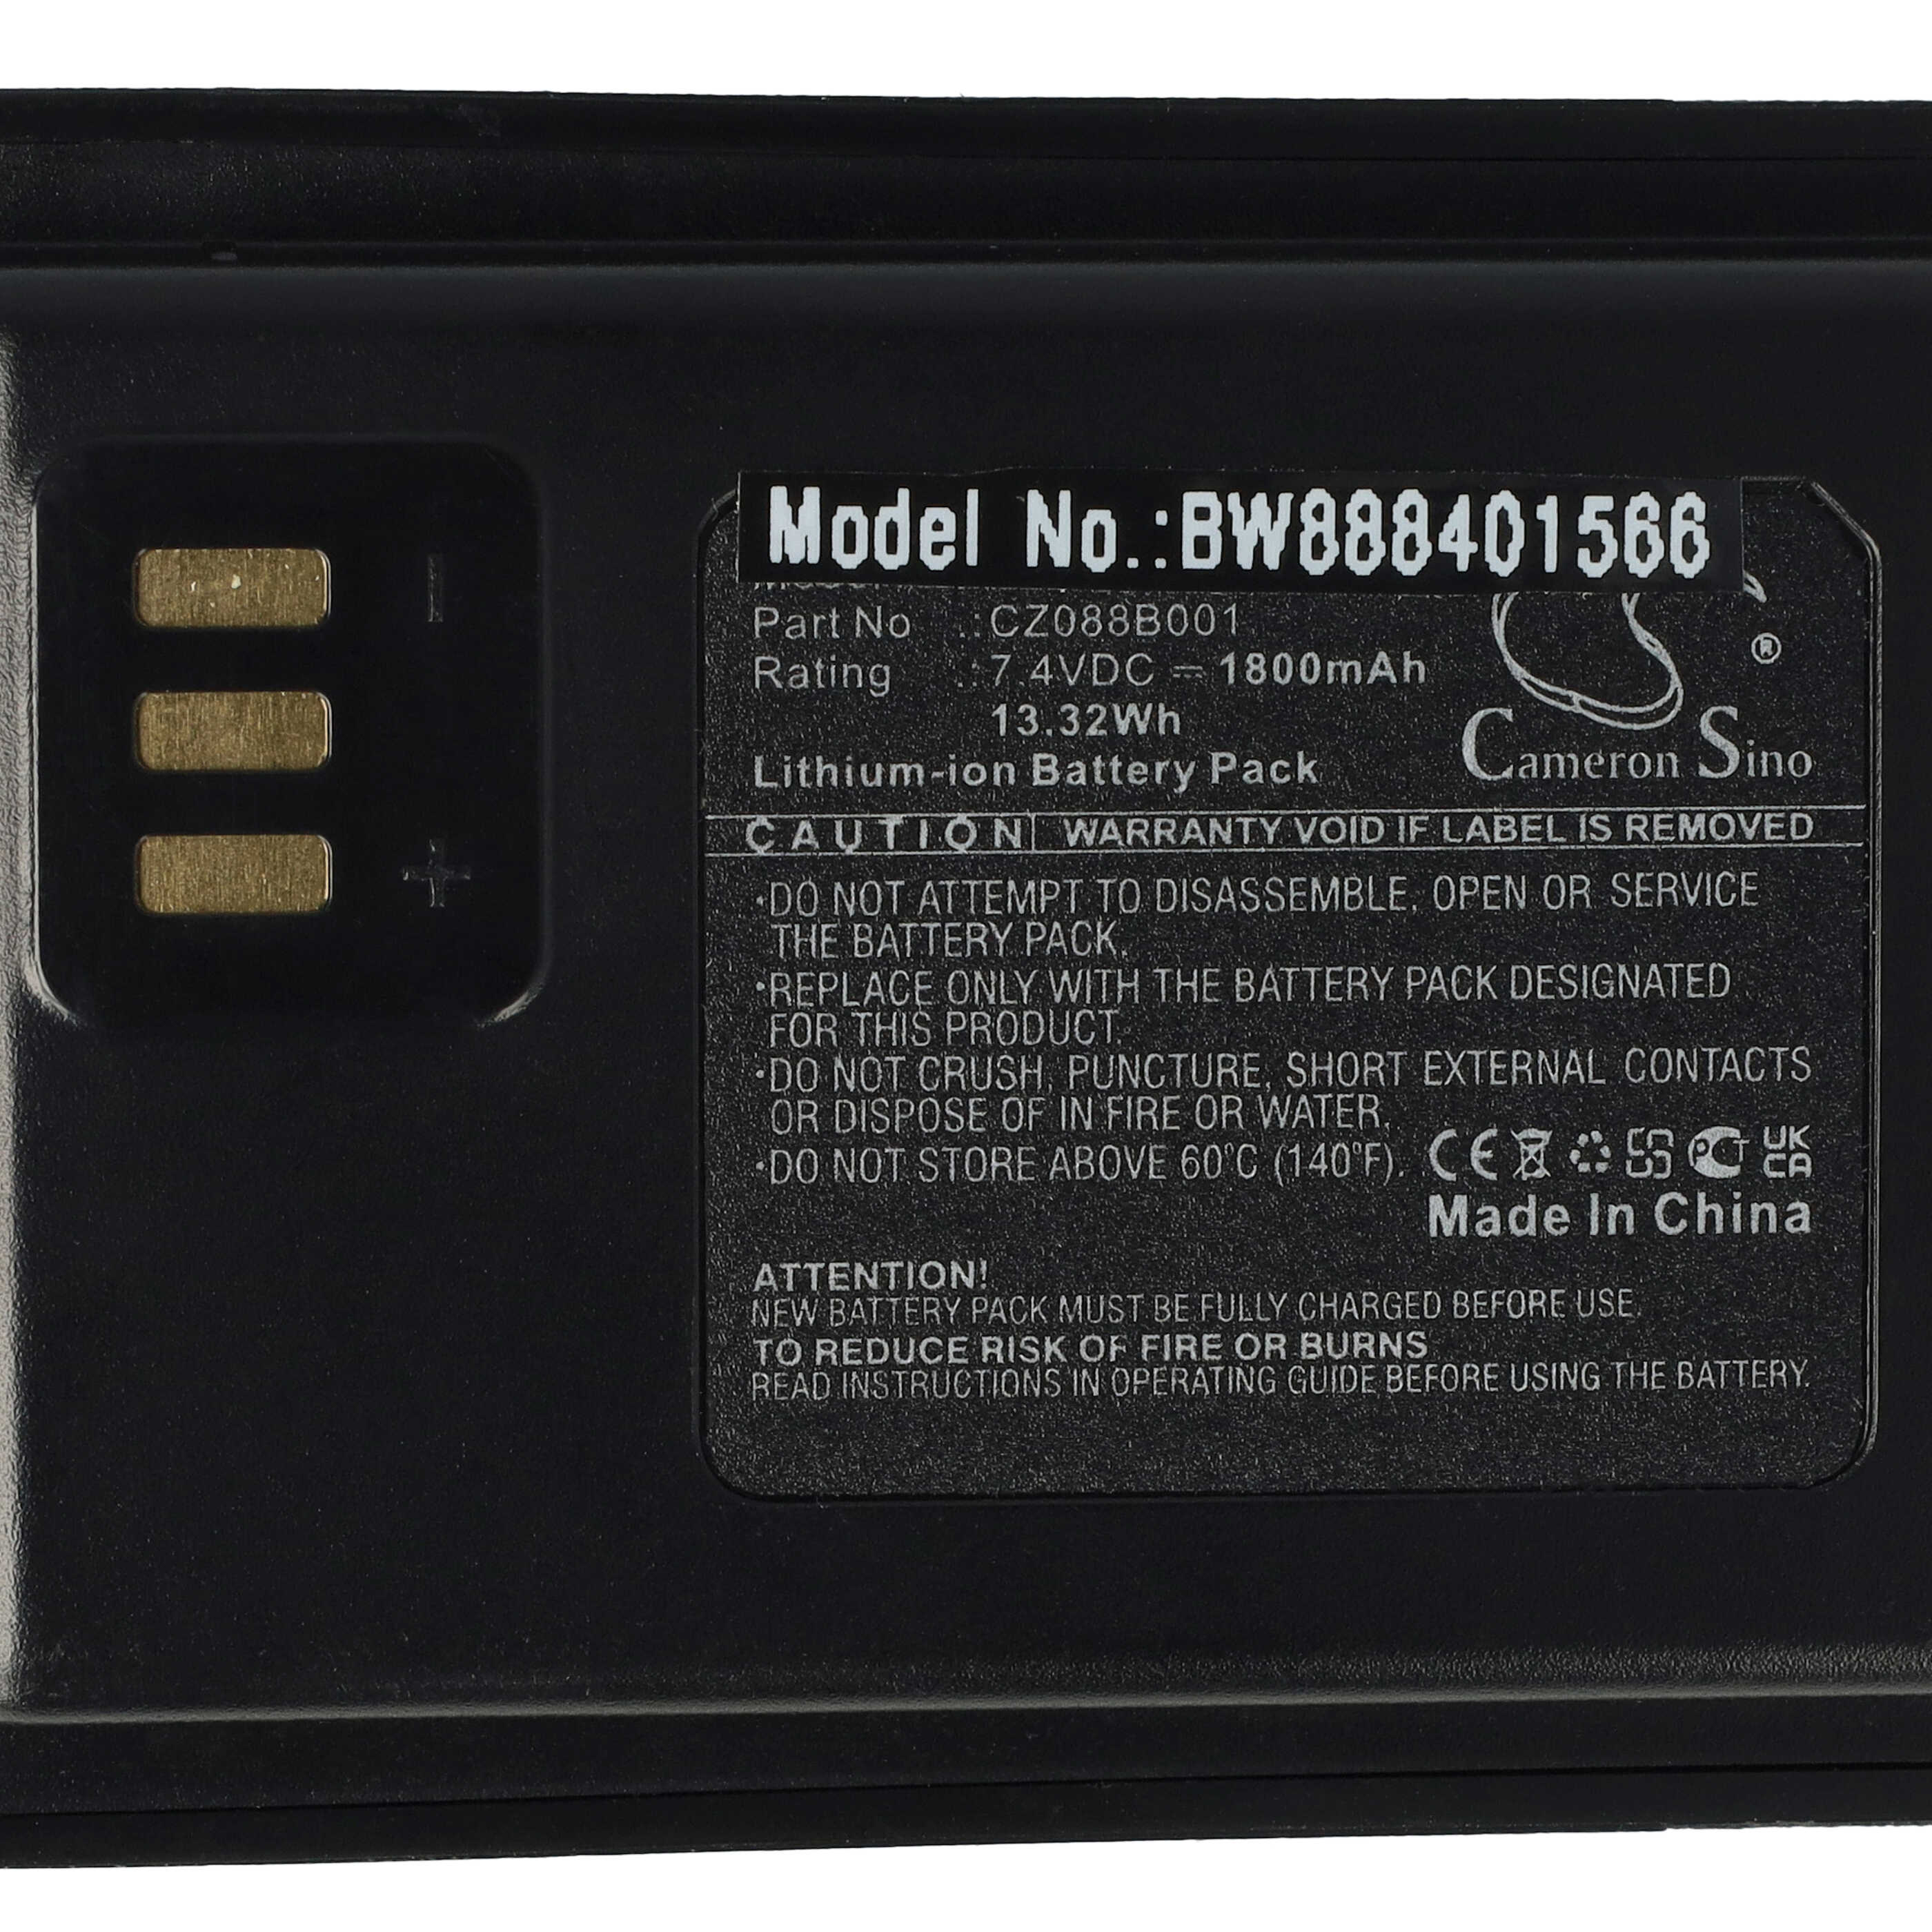 Batería reemplaza Motorola CZ088B001 para radio, walkie-talkie Motorola - 1800 mAh 7,4 V Li-Ion con clip